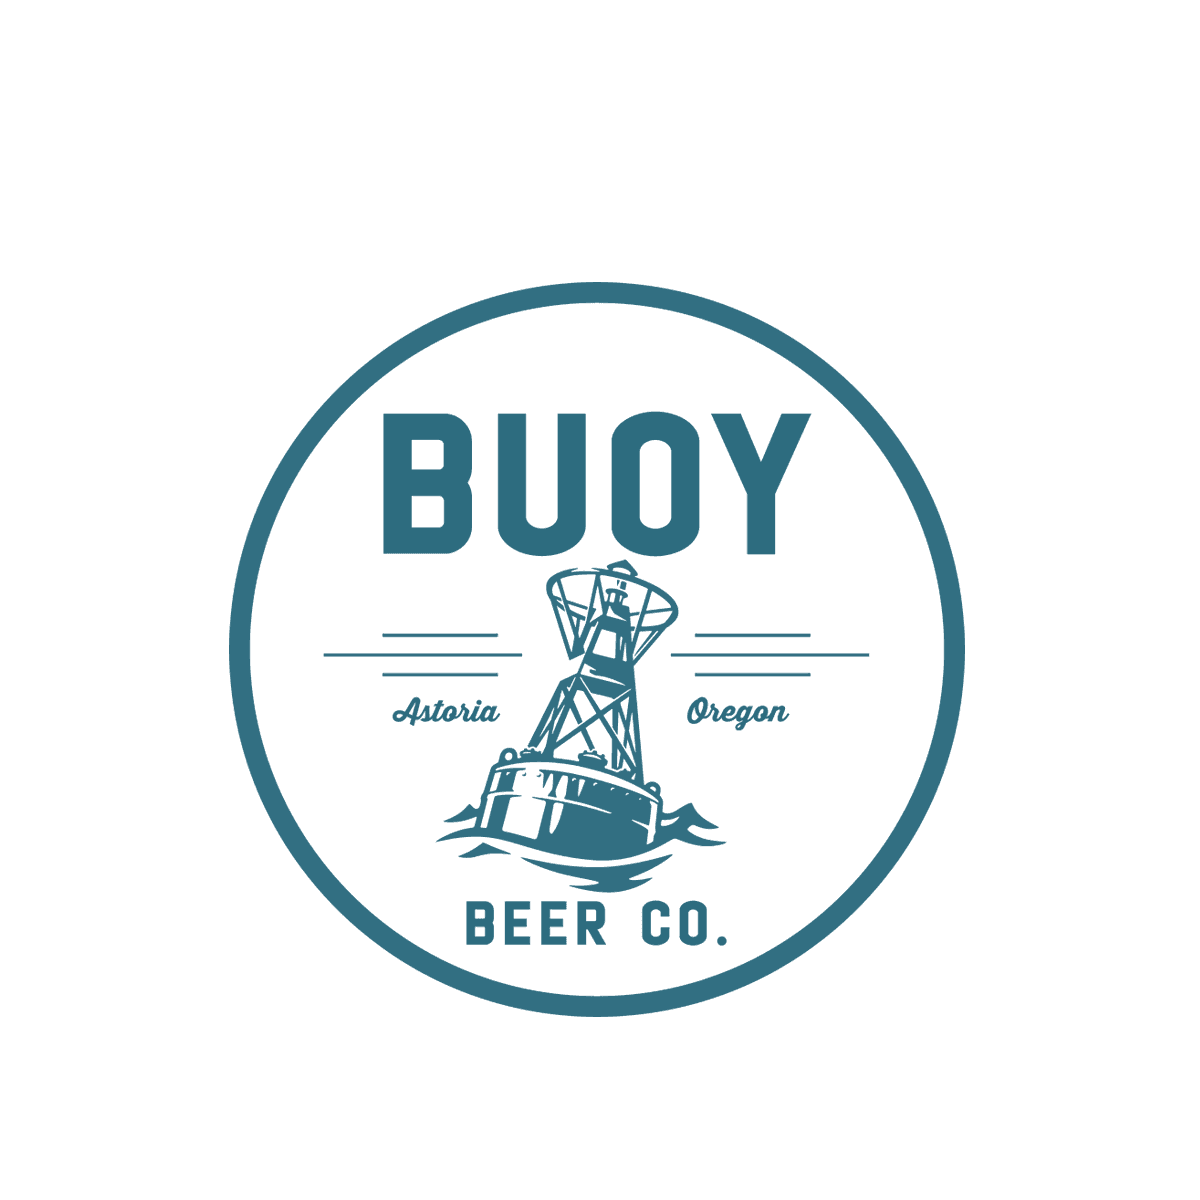 Buoy Beer